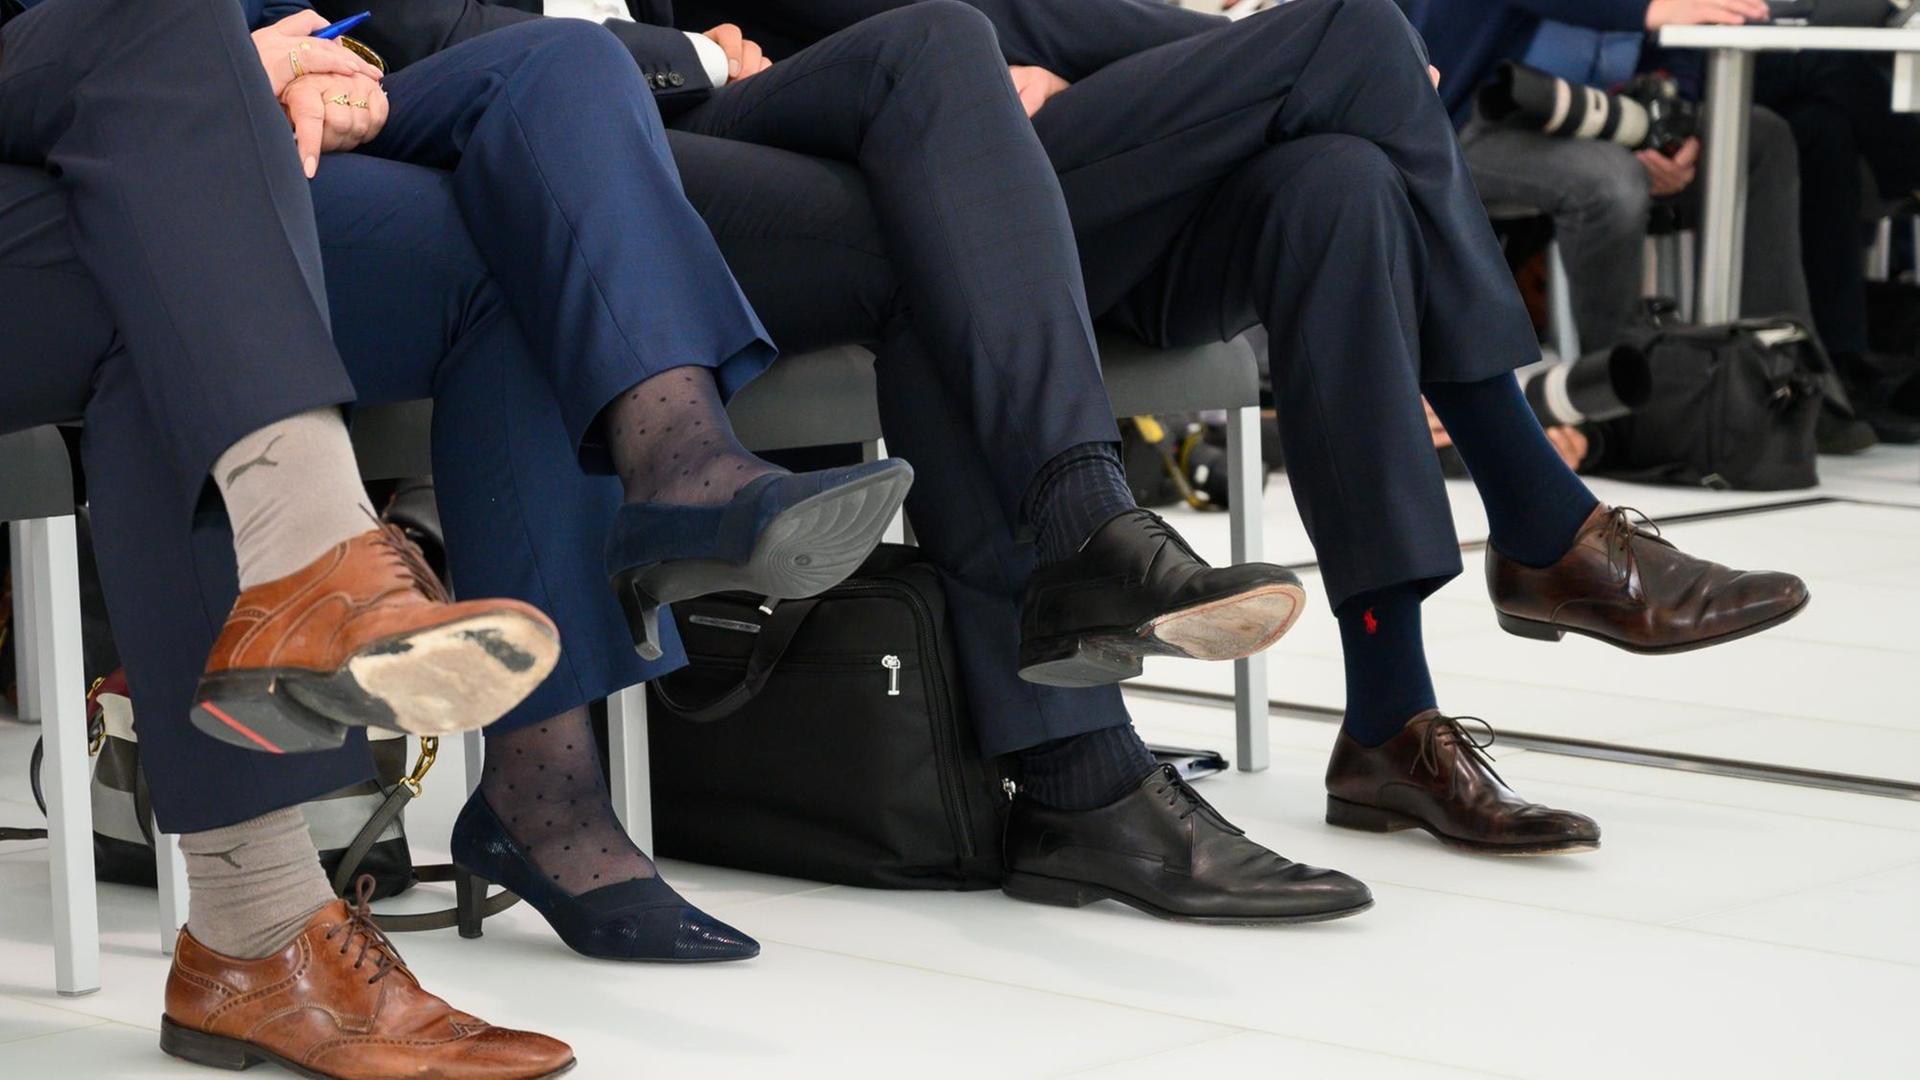 Jahrespressekonferenz der Volkswagen AG im März 2019: Vier Vorstandsmitglieder sitzen nebeneinander, unter ihnen eine einzige Frau - Hiltrud Dorothea Werner. Zu sehen sind nur die übereinandergeschlagenen Beine der Personen.